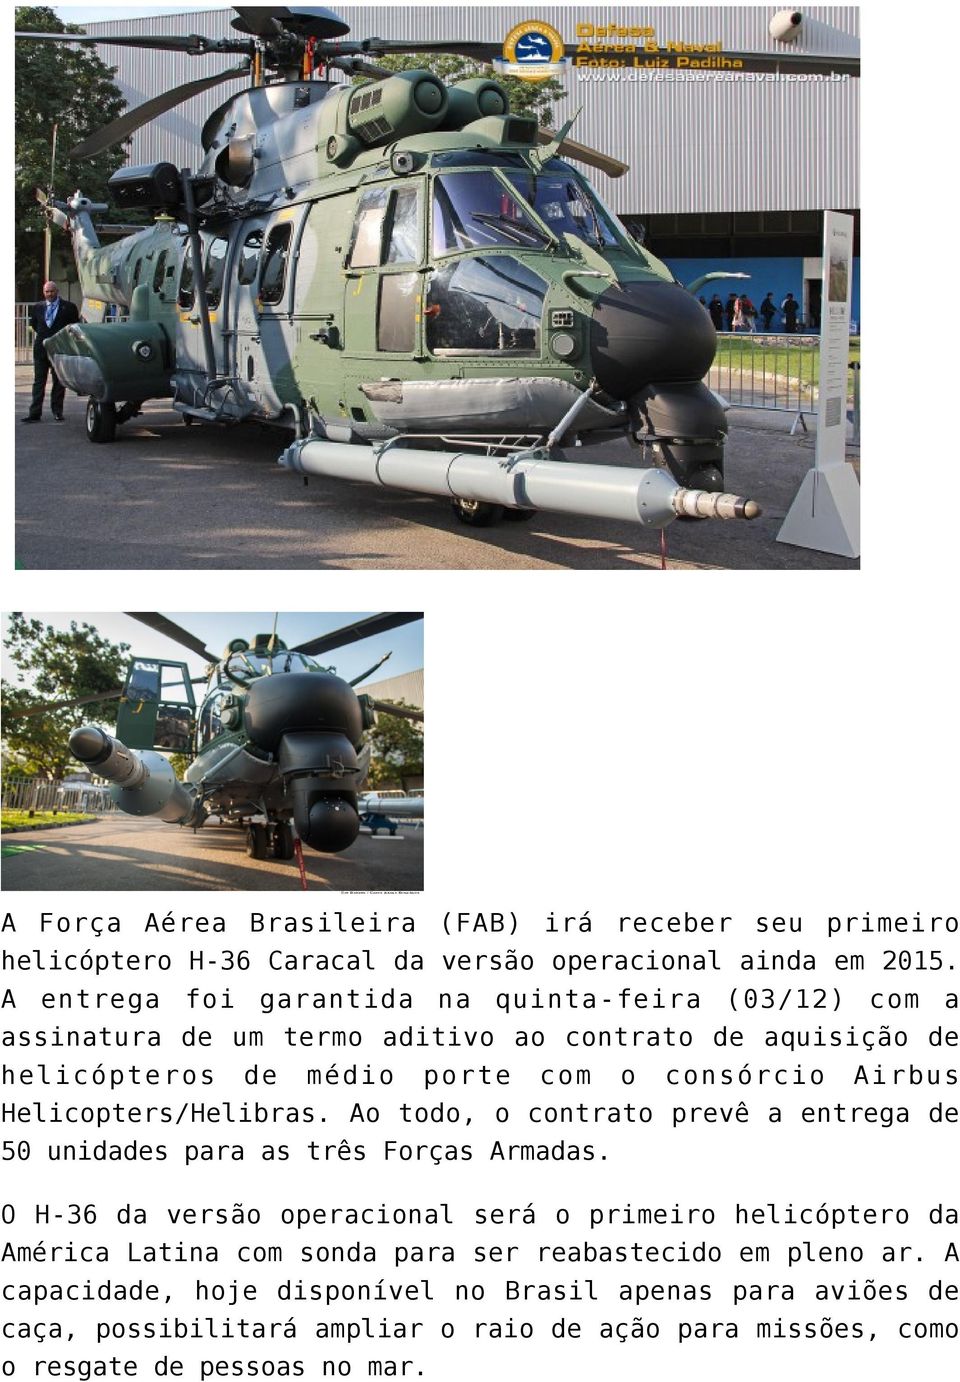 Helicopters/Helibras. Ao todo, o contrato prevê a entrega de 50 unidades para as três Forças Armadas.